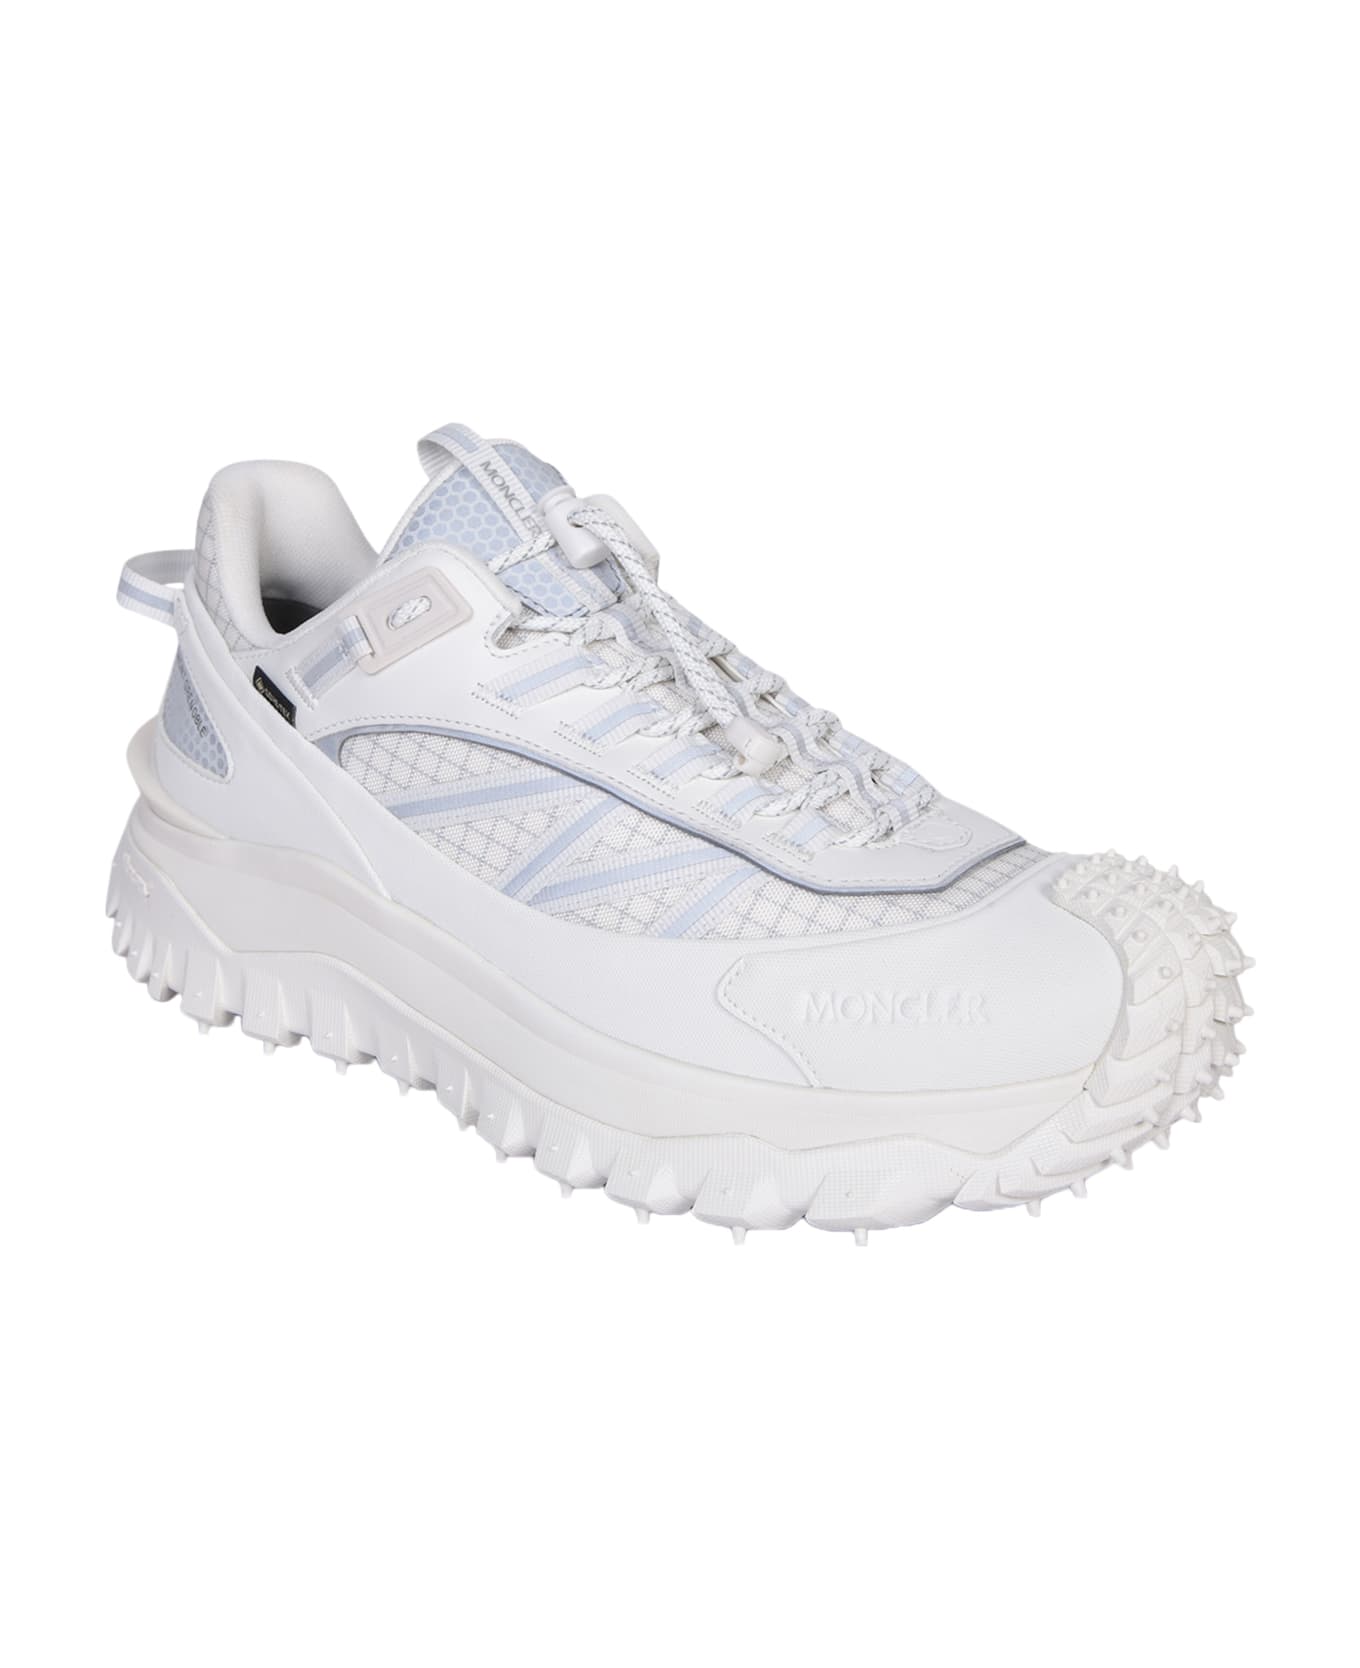 Moncler White Trailgrip Gtx Sneakers - White スニーカー